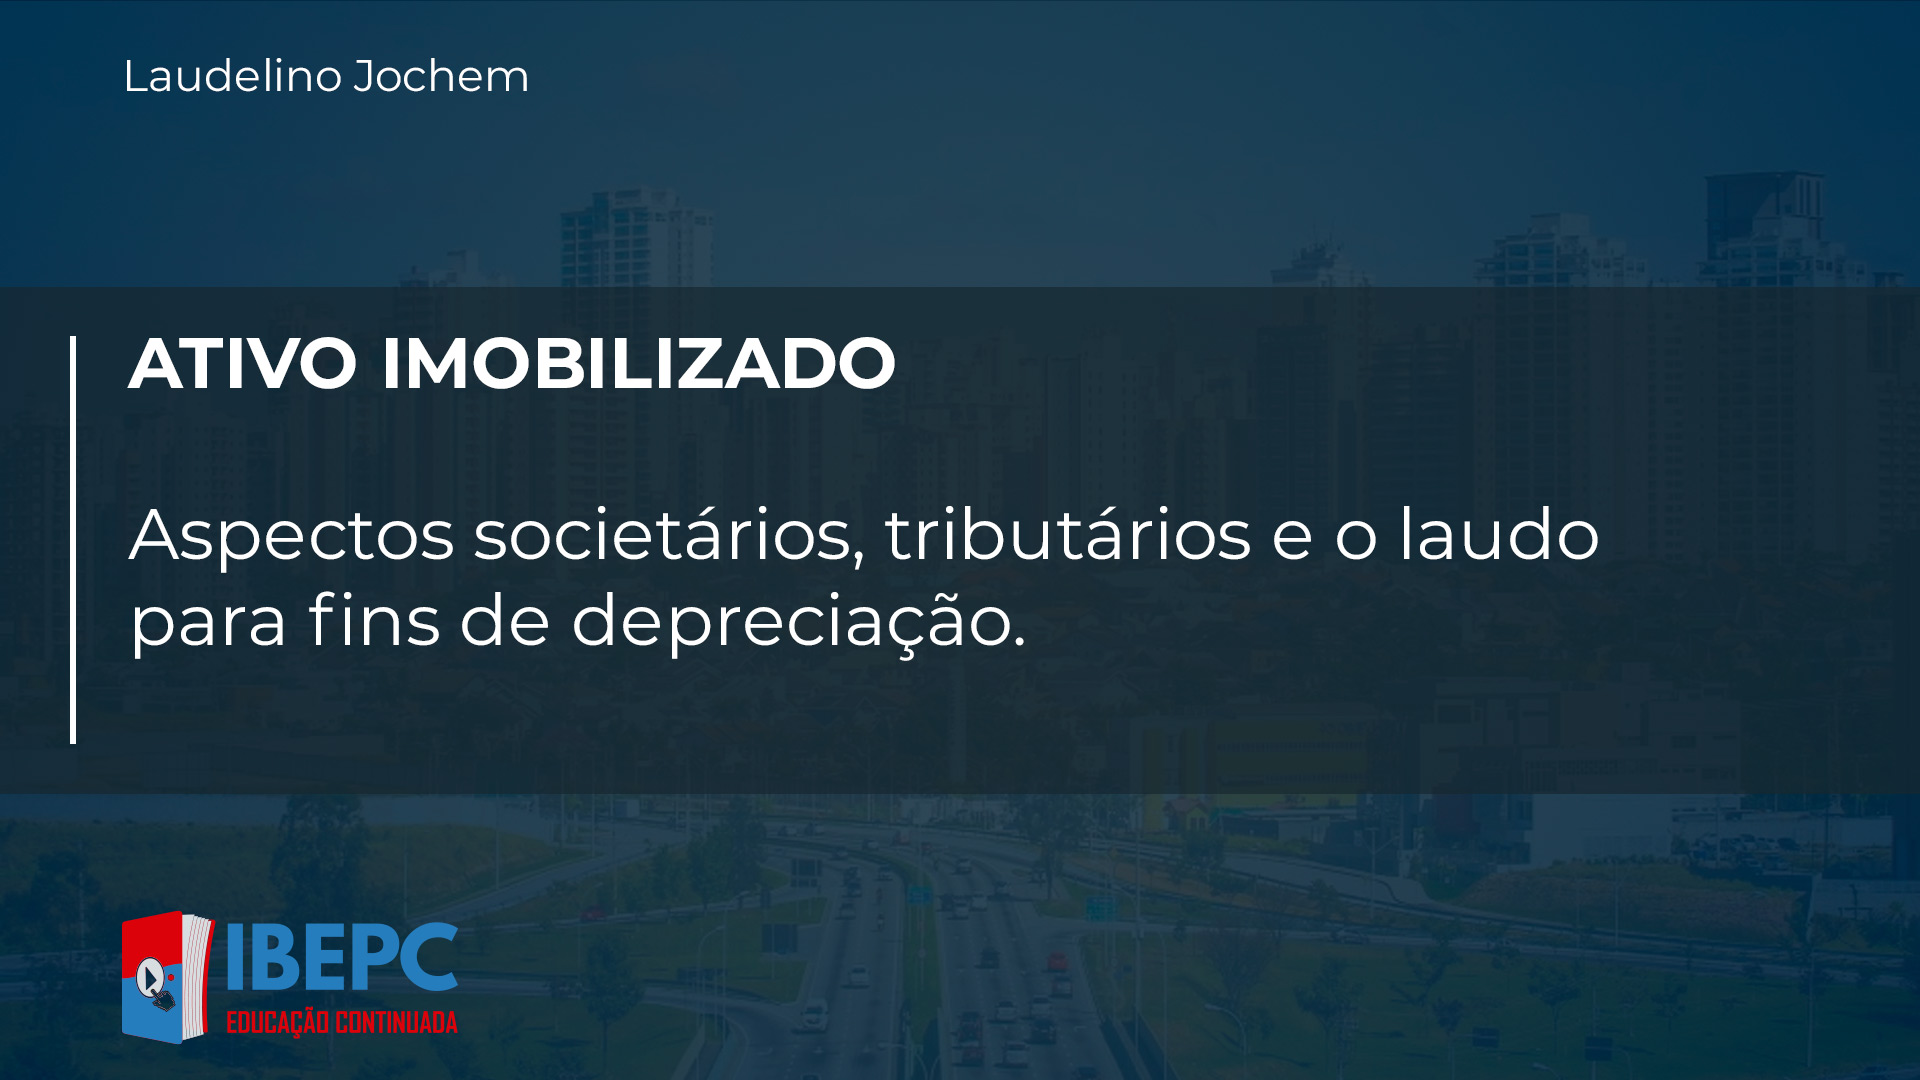 IBEPC - Instituto Brasileiro de Educação Profissional Continuada ATIVO IMOBILIZADO - Aspectos societários, tributários e o laudo para fins de depreciação.